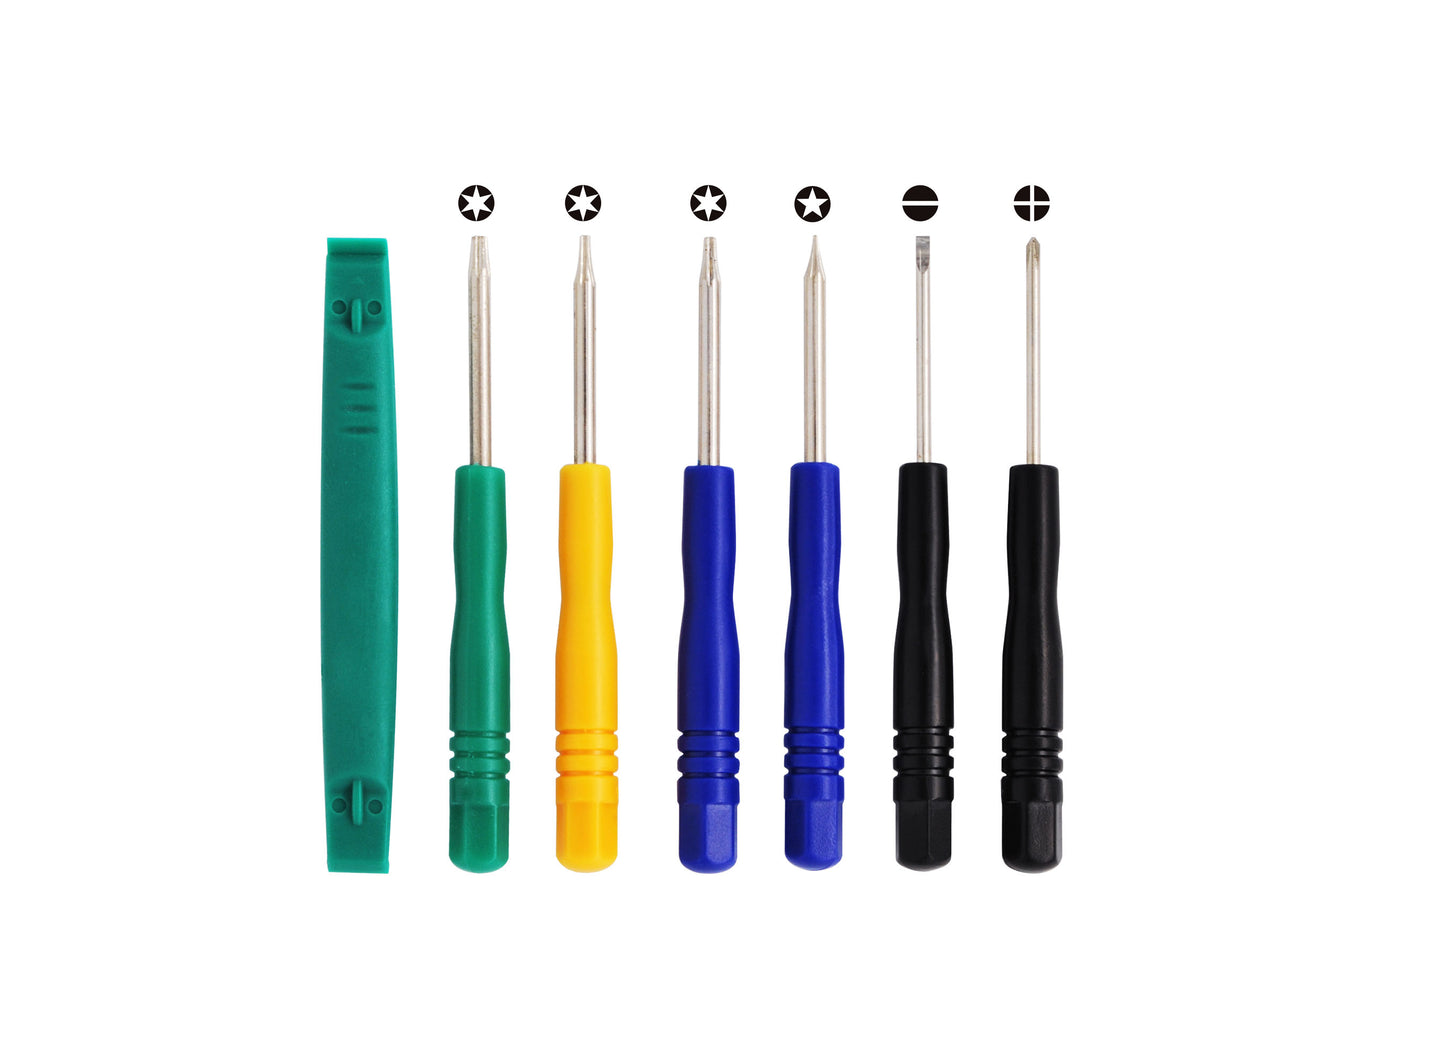 7 Tools (T8, T6, T5, T-, T+, Plastic & Pentalobe) set kit for iPOD, iPhone, iPAD Battery install-SMAVtronics